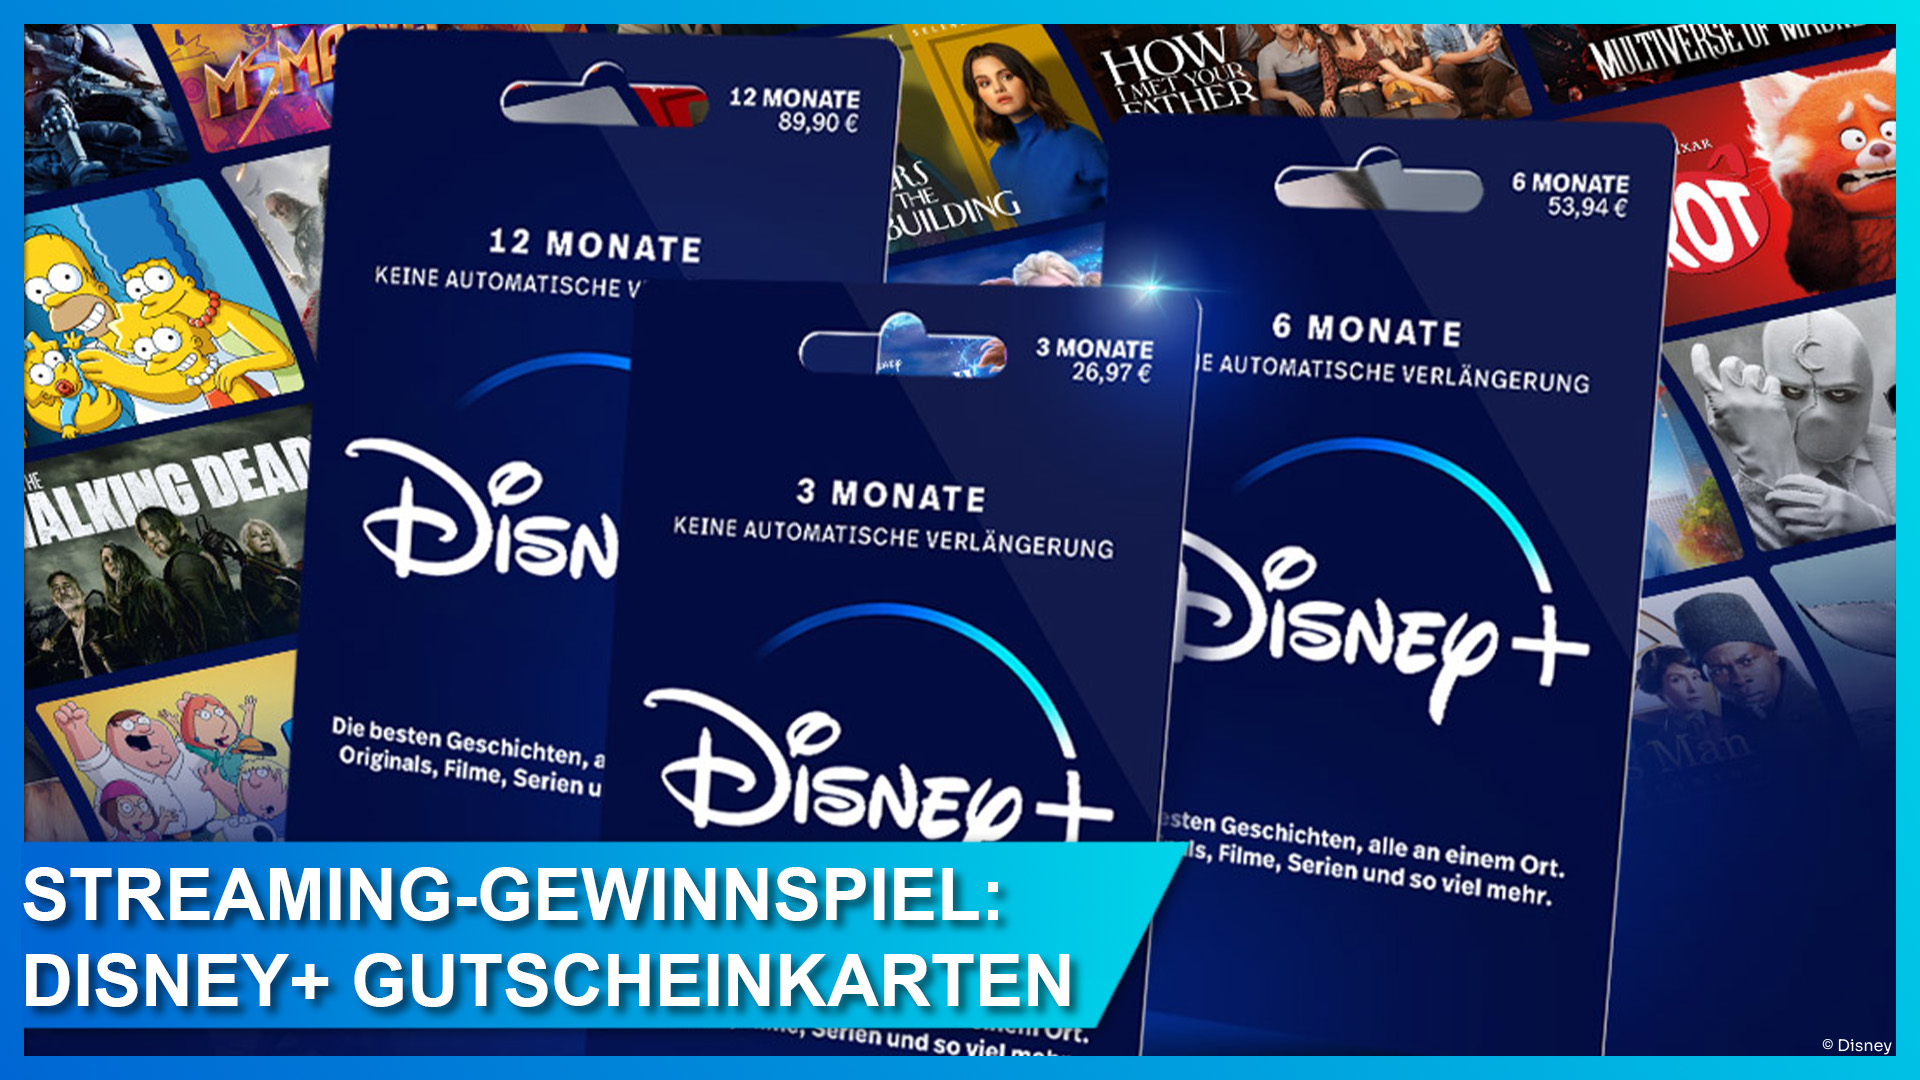 Gewinnspiel zum Streaming-Sommer: Wir verlosen Gutscheinkarten für 3 Monate  Disney+! | DisneyCentral.de – dein Disney Fan Portal